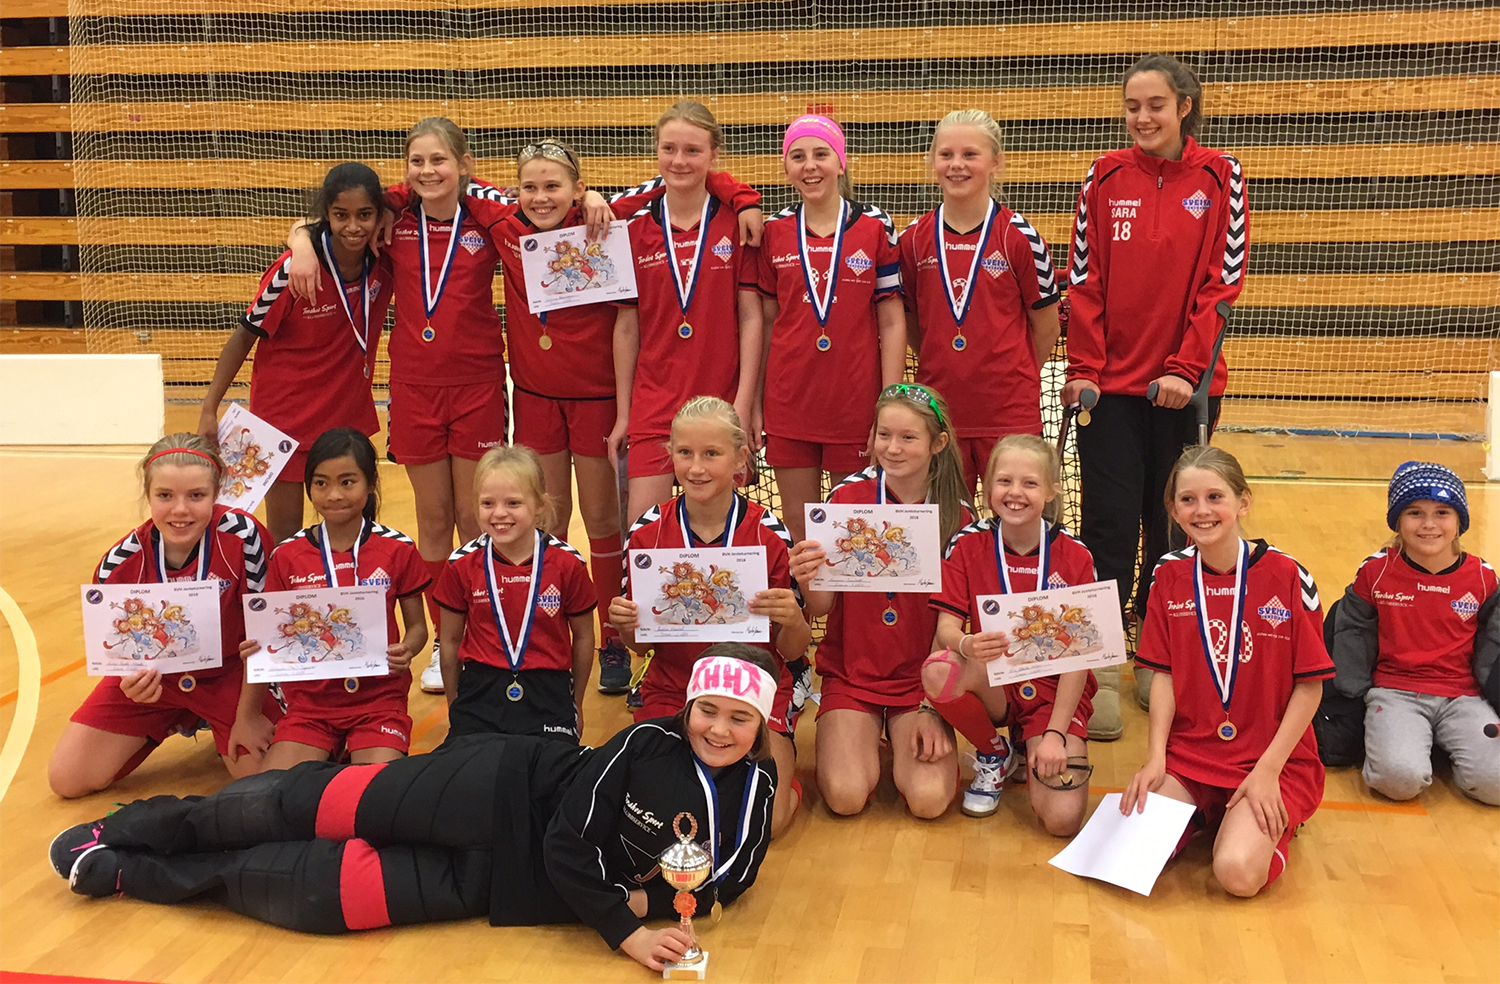 Sveiva jenter 14, vant søndag jenteturneringen i Rykkinhallen.